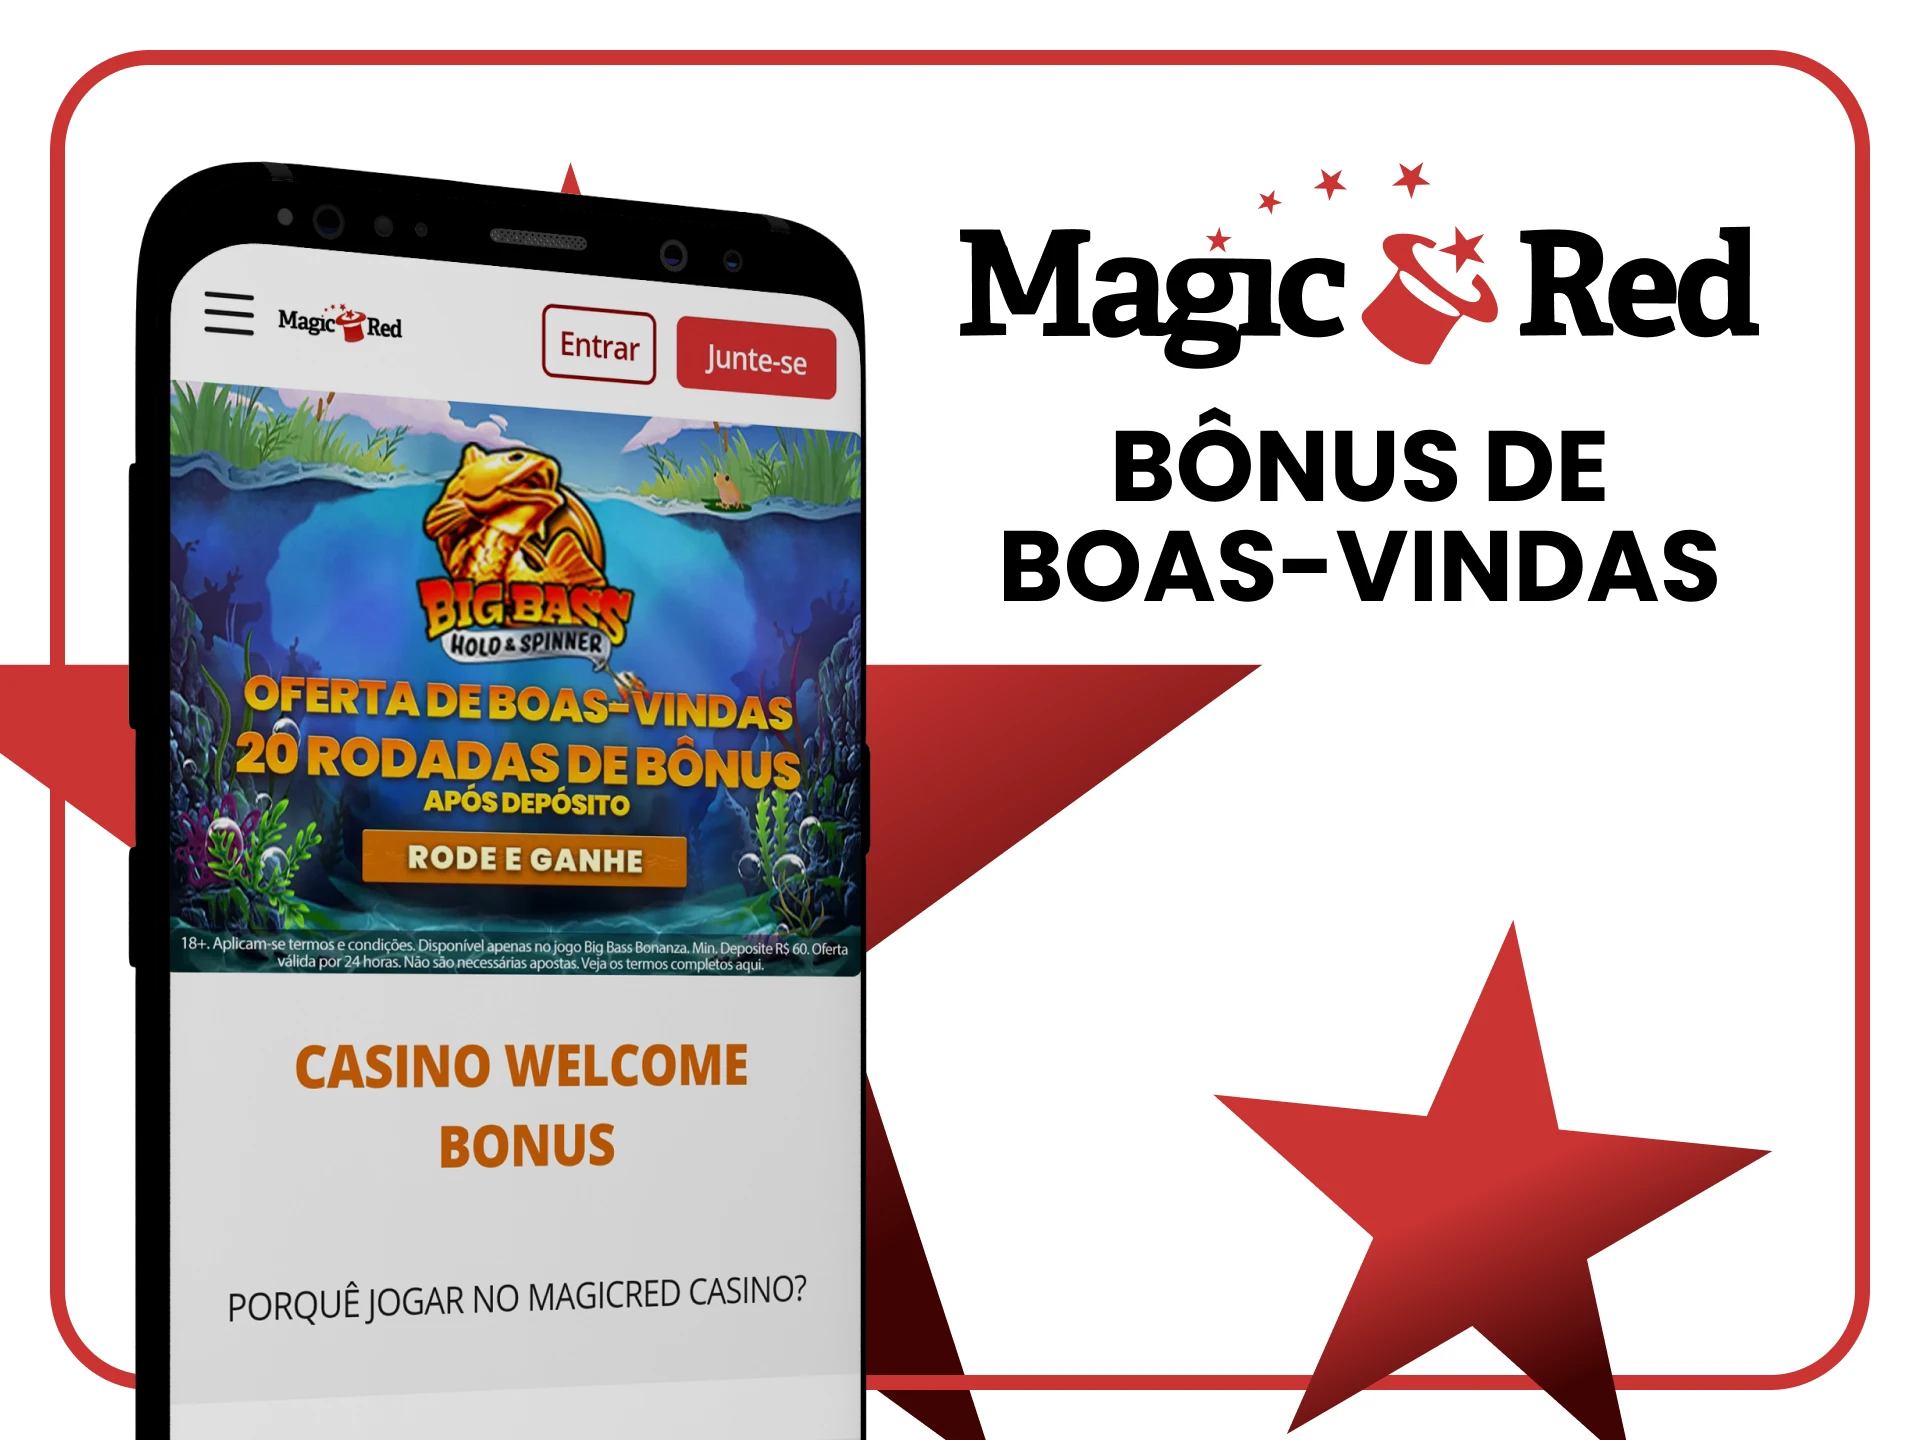 Ganhe 20 rodadas grátis como bônus de boas-vindas no aplicativo Magic Red.